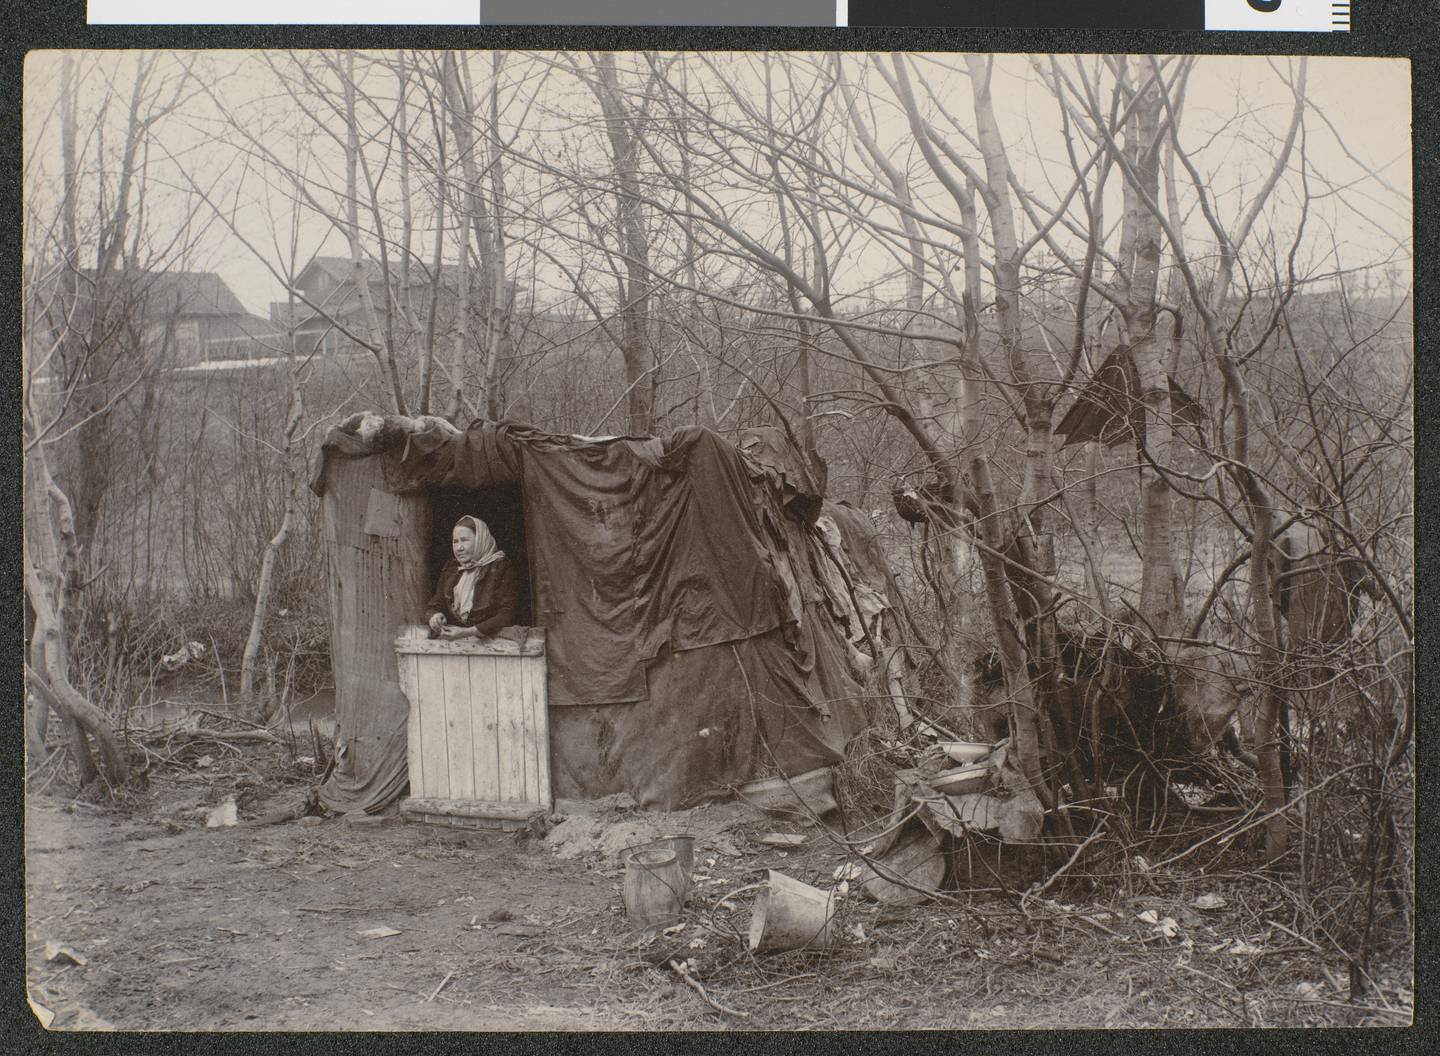 Familiebolig på Frøen i Vestre Aker april 1897 (!). En kvinne stående i døråpningen til skuret som er ett av flere lignende boliger i området.